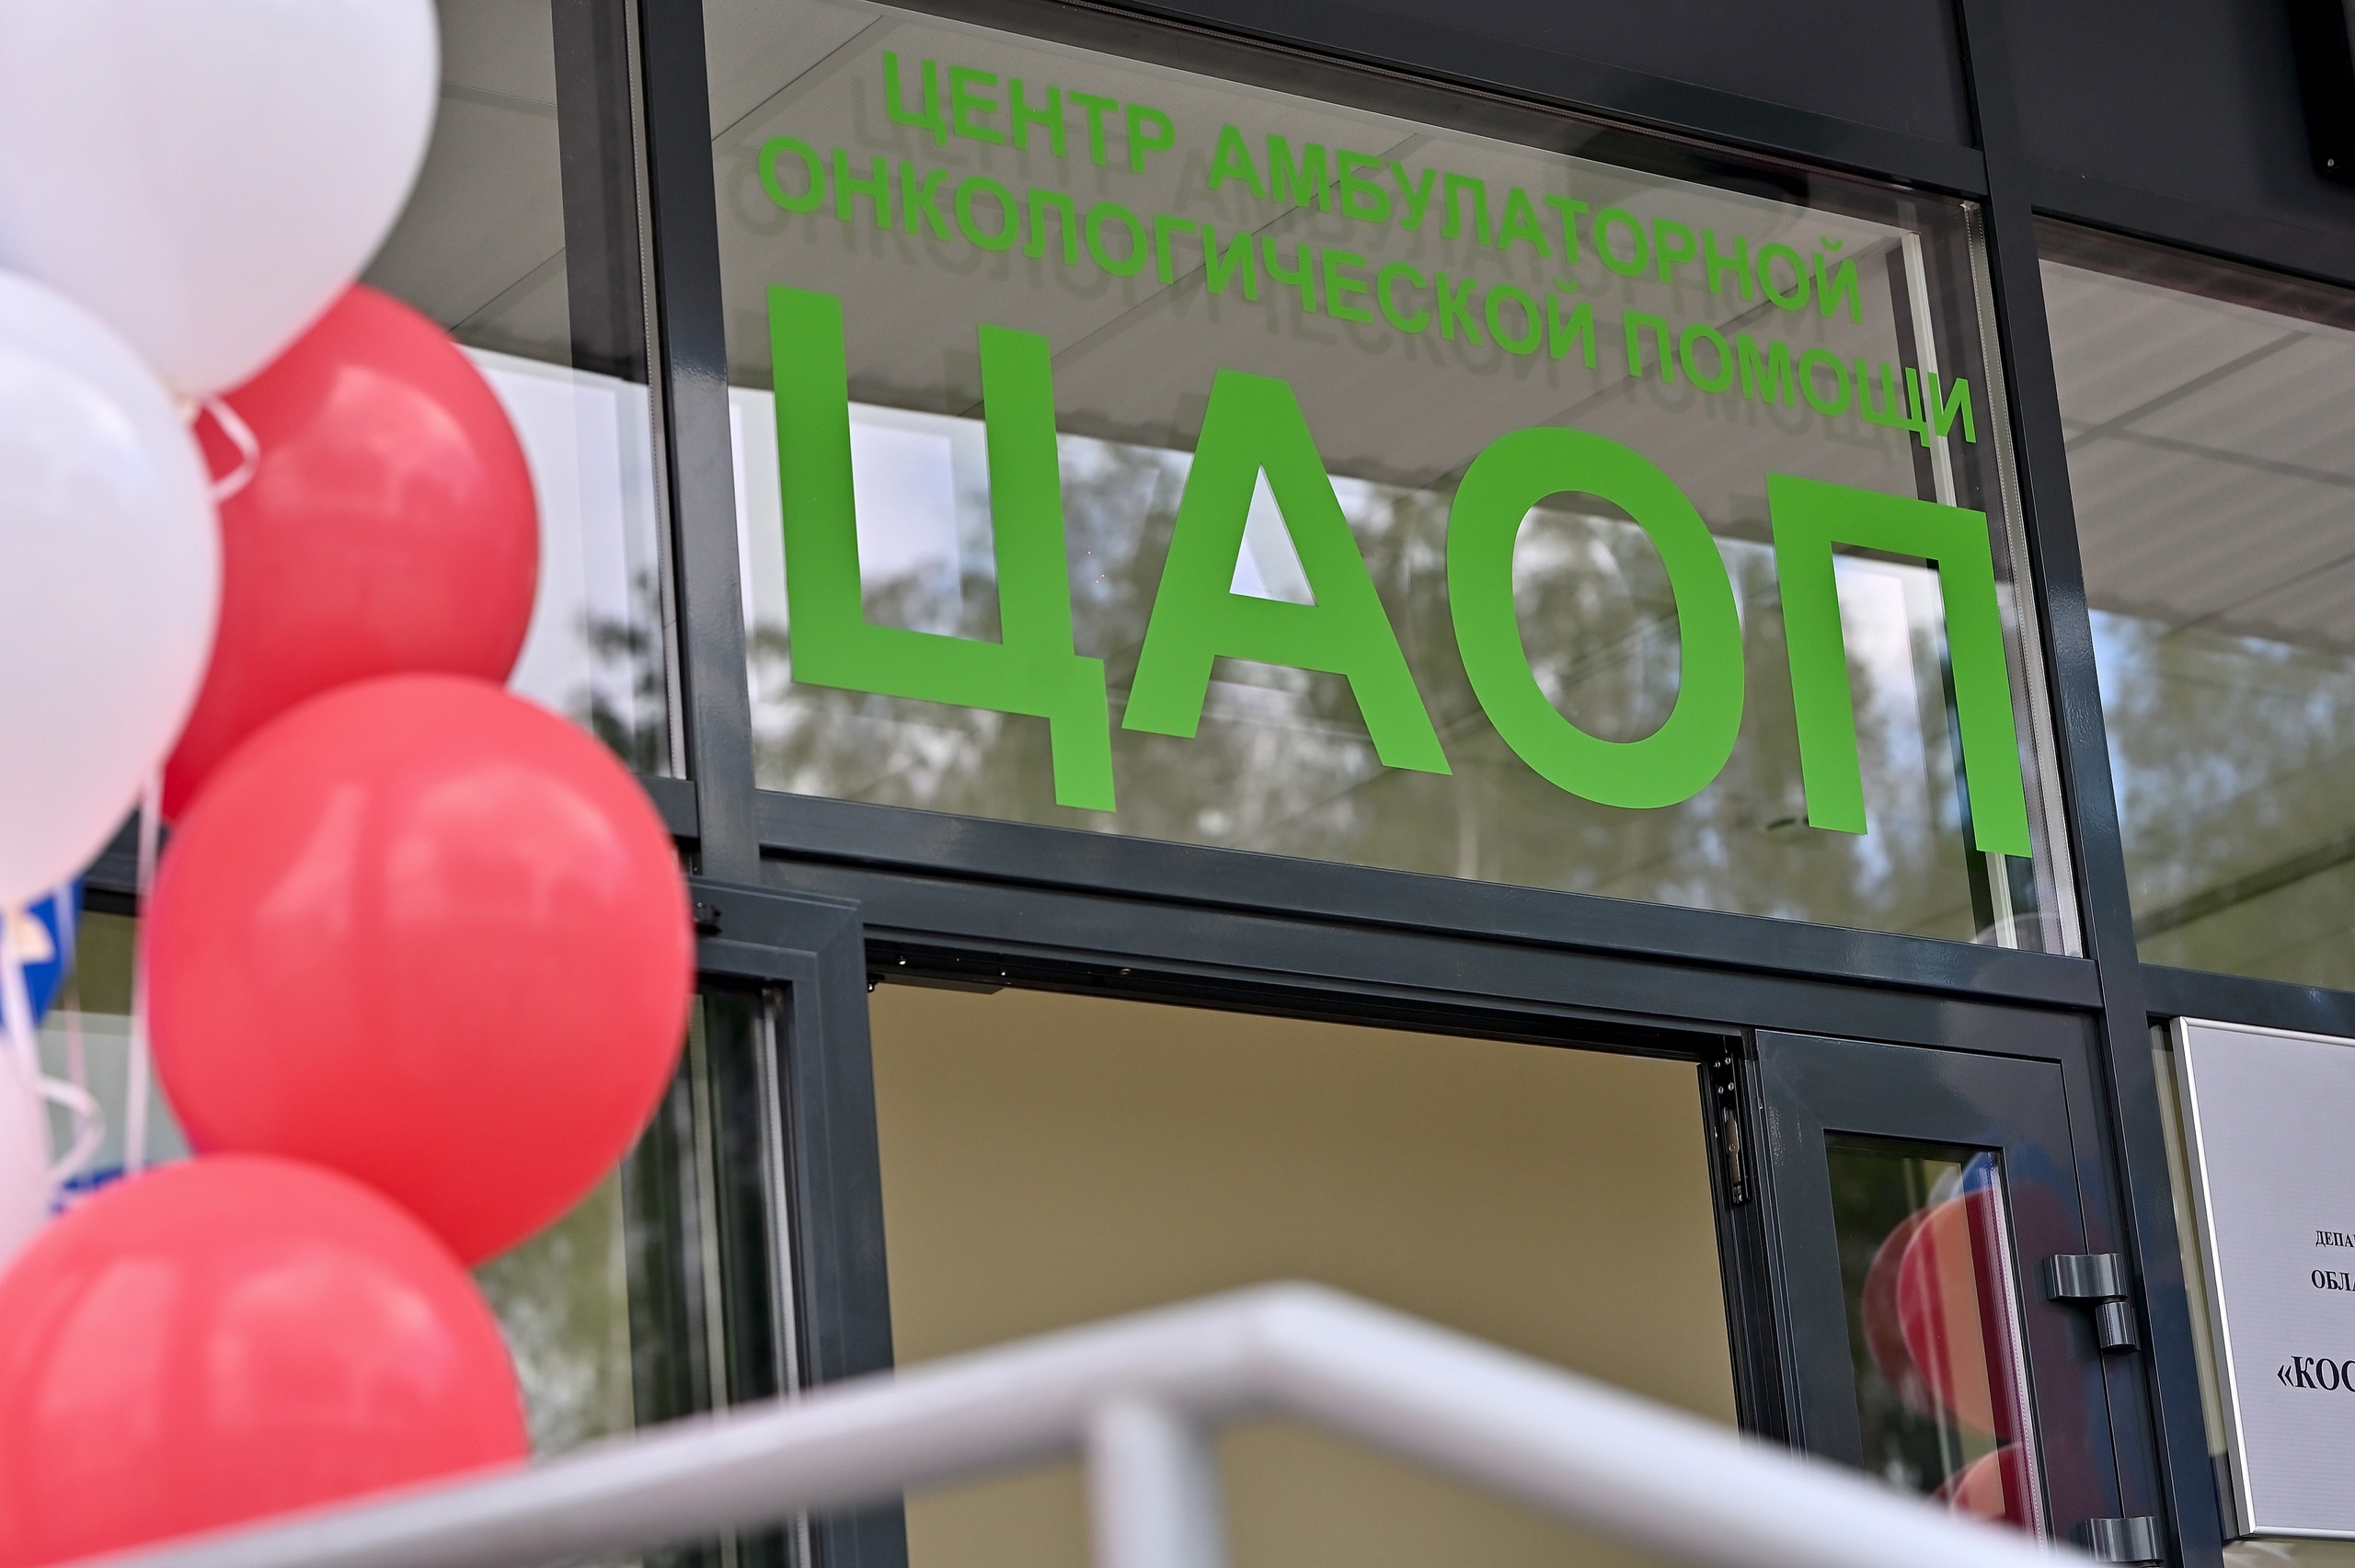 Костромская область формирует единую централизованную сеть амбулаторной онкологической помощи